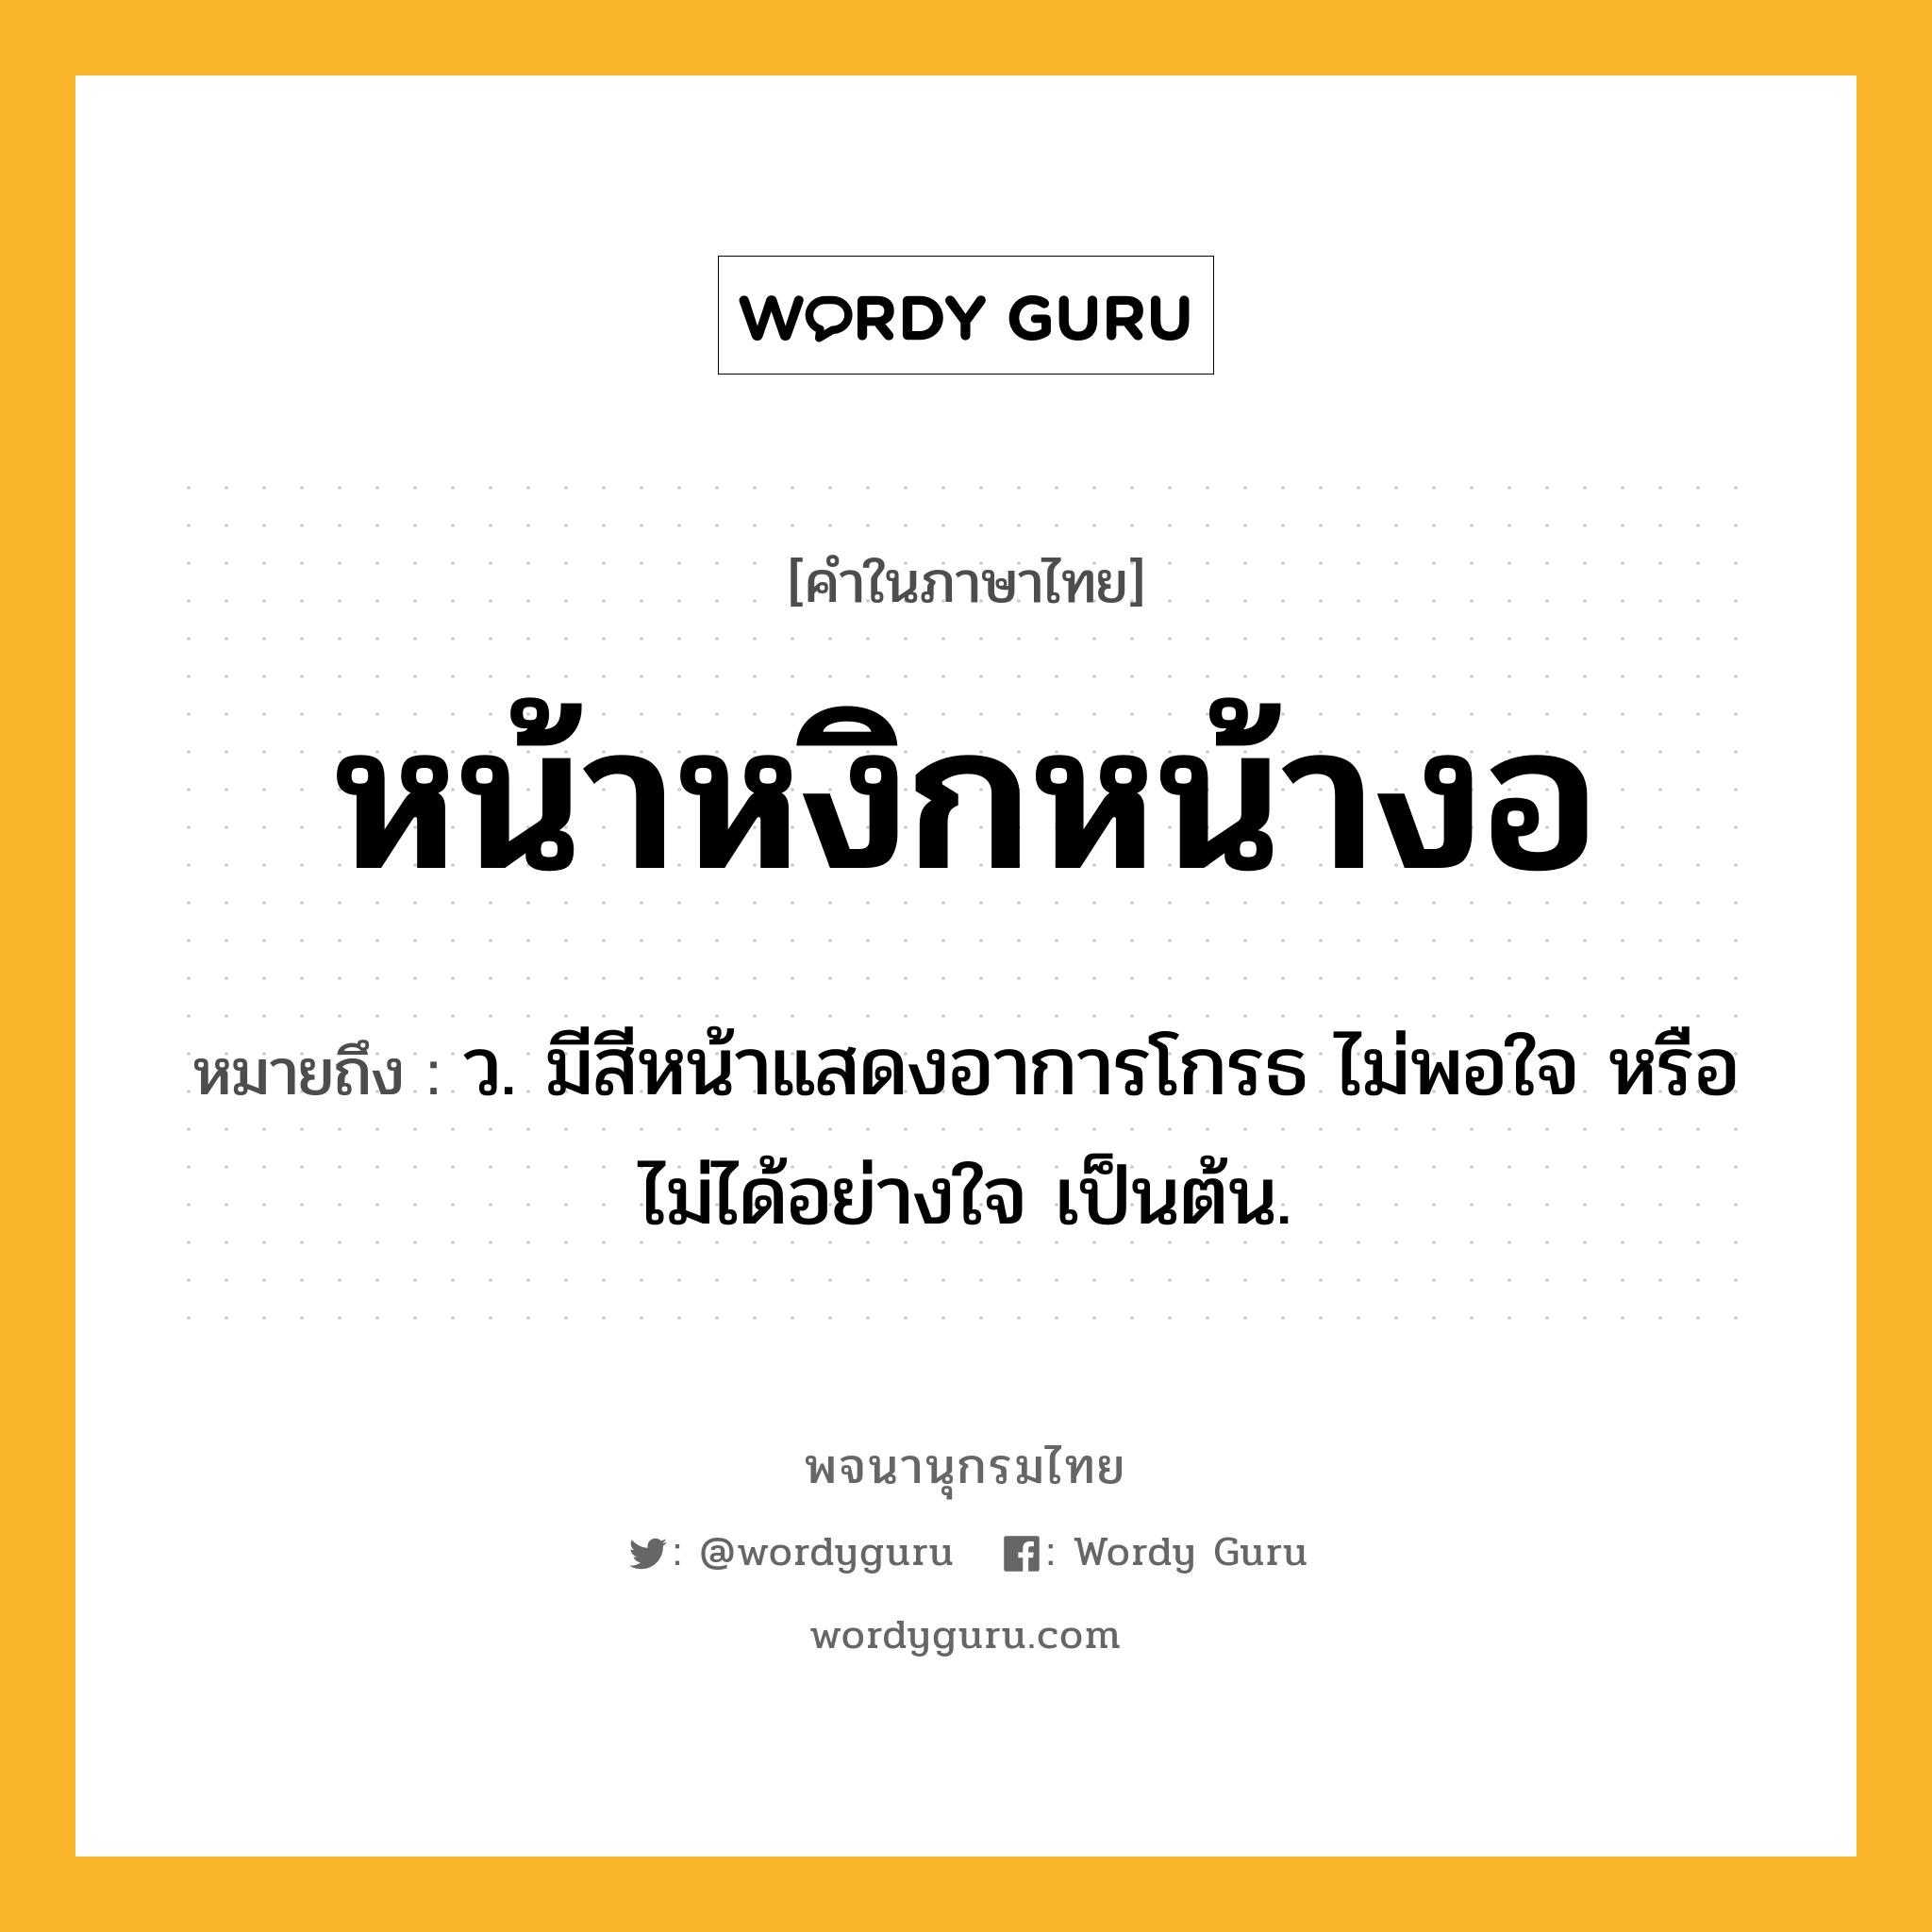 หน้าหงิกหน้างอ หมายถึงอะไร?, คำในภาษาไทย หน้าหงิกหน้างอ หมายถึง ว. มีสีหน้าแสดงอาการโกรธ ไม่พอใจ หรือไม่ได้อย่างใจ เป็นต้น.